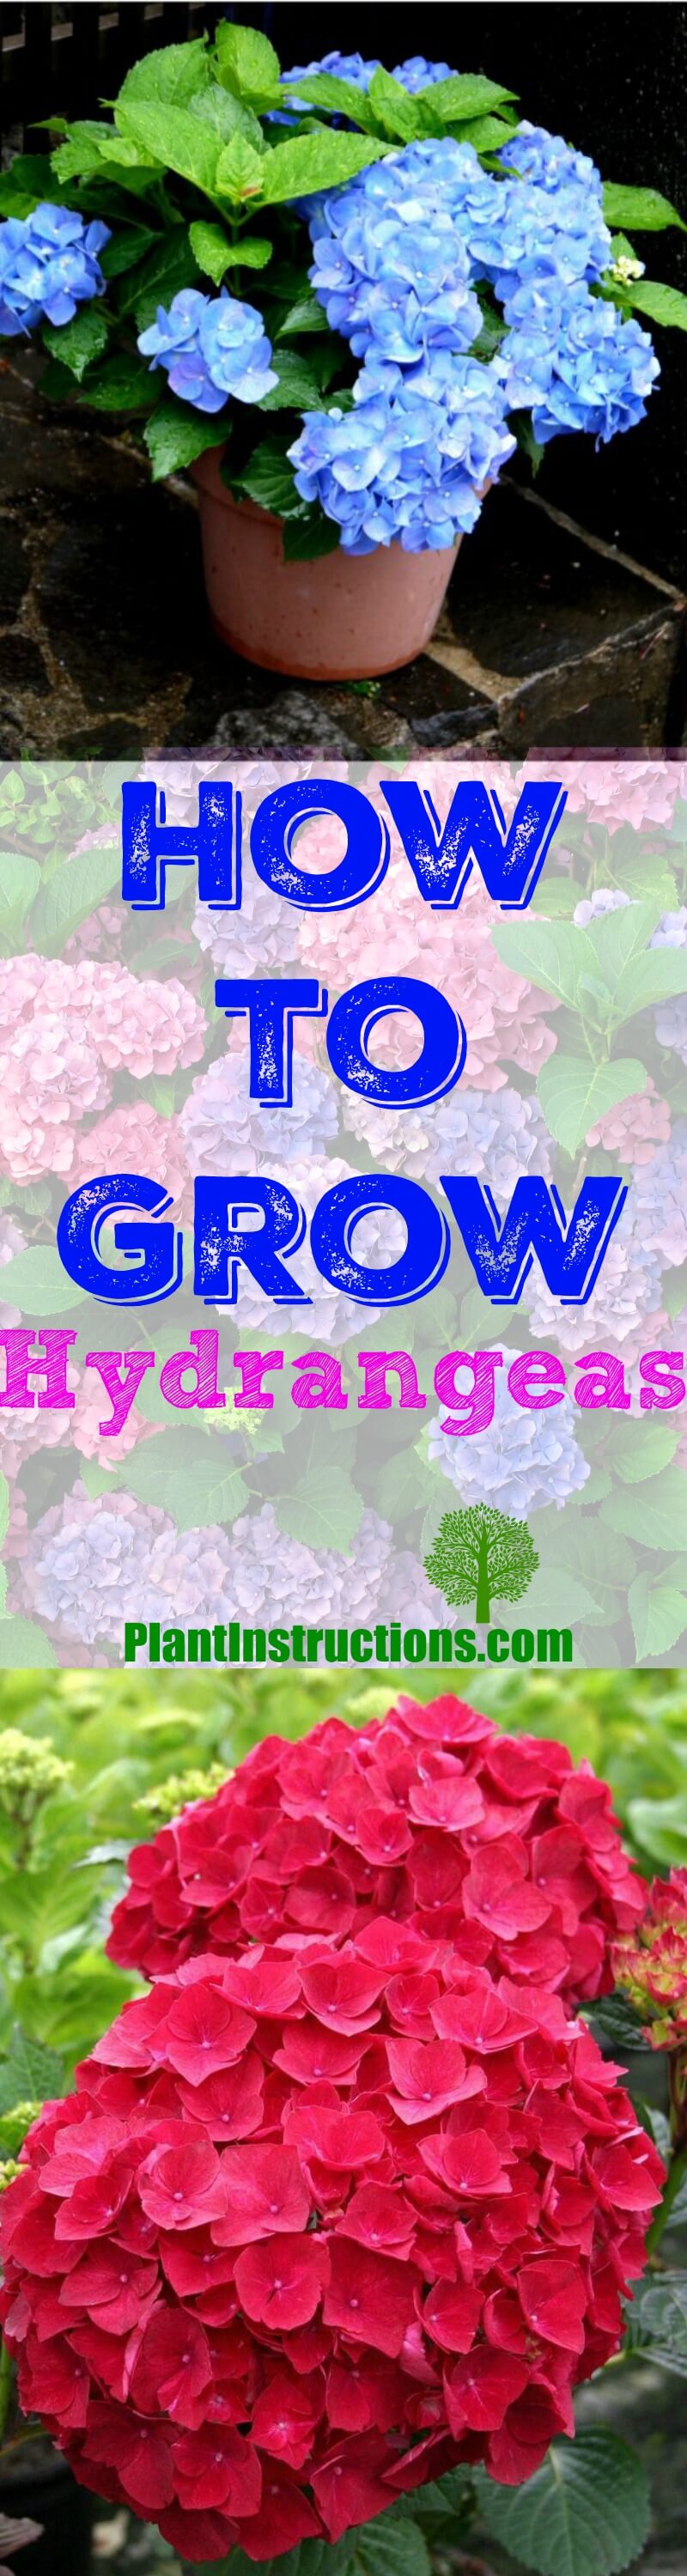 Grow Hydrangeas